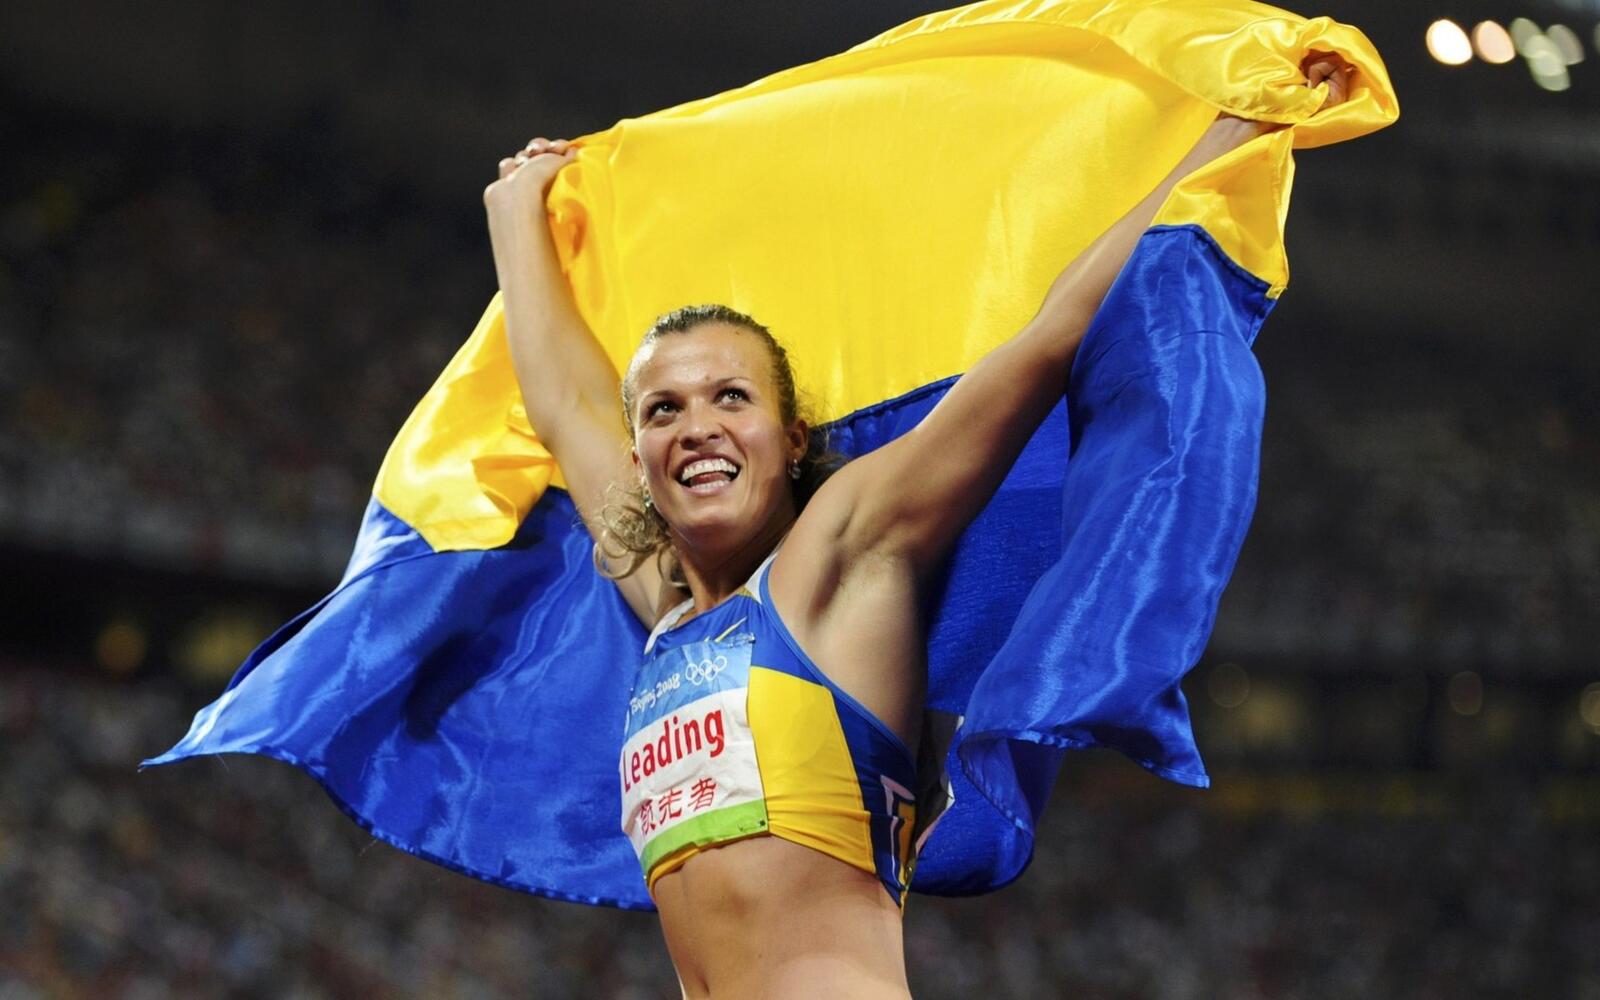 Wallpapers Dobrynska natalya vladimirovna athlete ukraine on the desktop